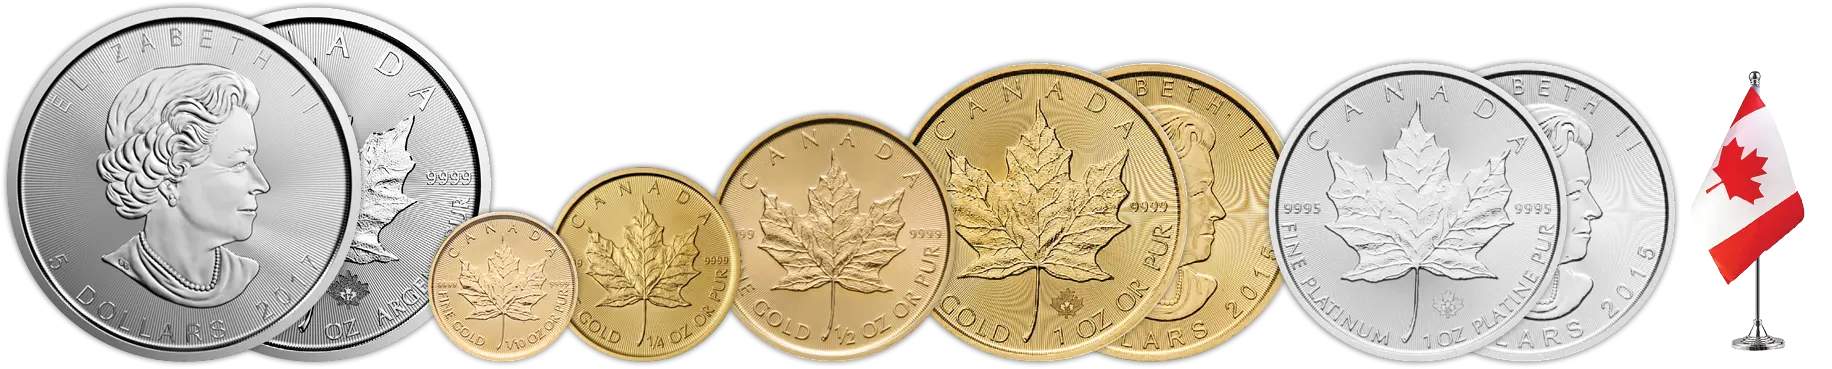 Kanadai juharlevél érmesor - 1 uncia ezüst érme, arany érme 1 unciától tized unciáig